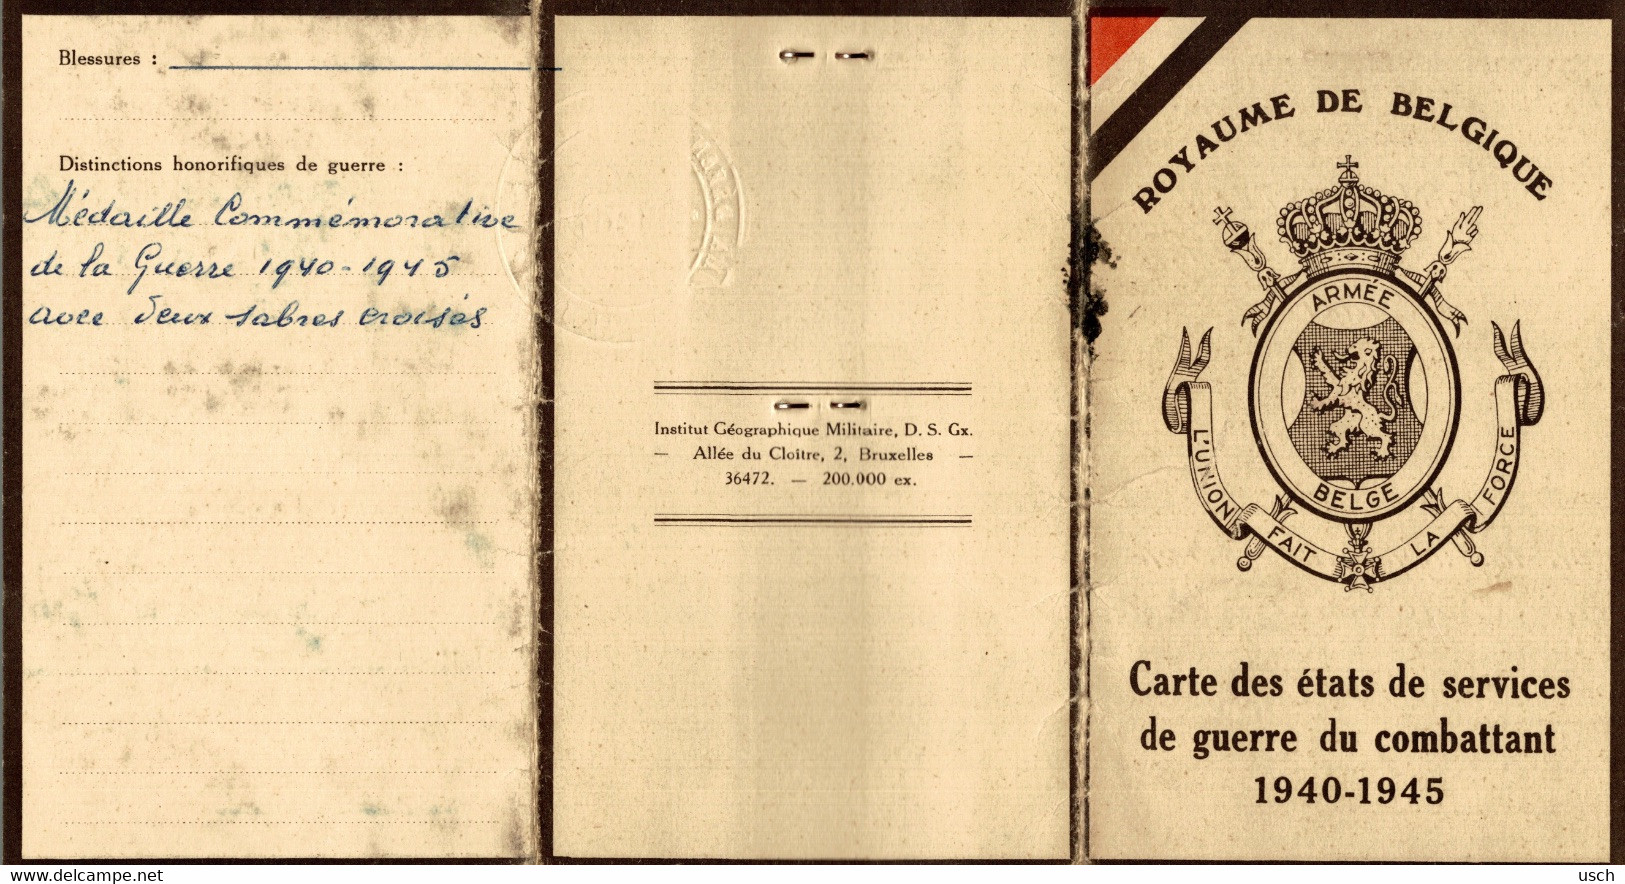 WW2 - BELGIQUE - BELGIUM - ST. GILLES, Rare CARTE DES ÉTATS DE SERVICES DE GUERRE DU COMBATTANT 1940-1945 - Documenti